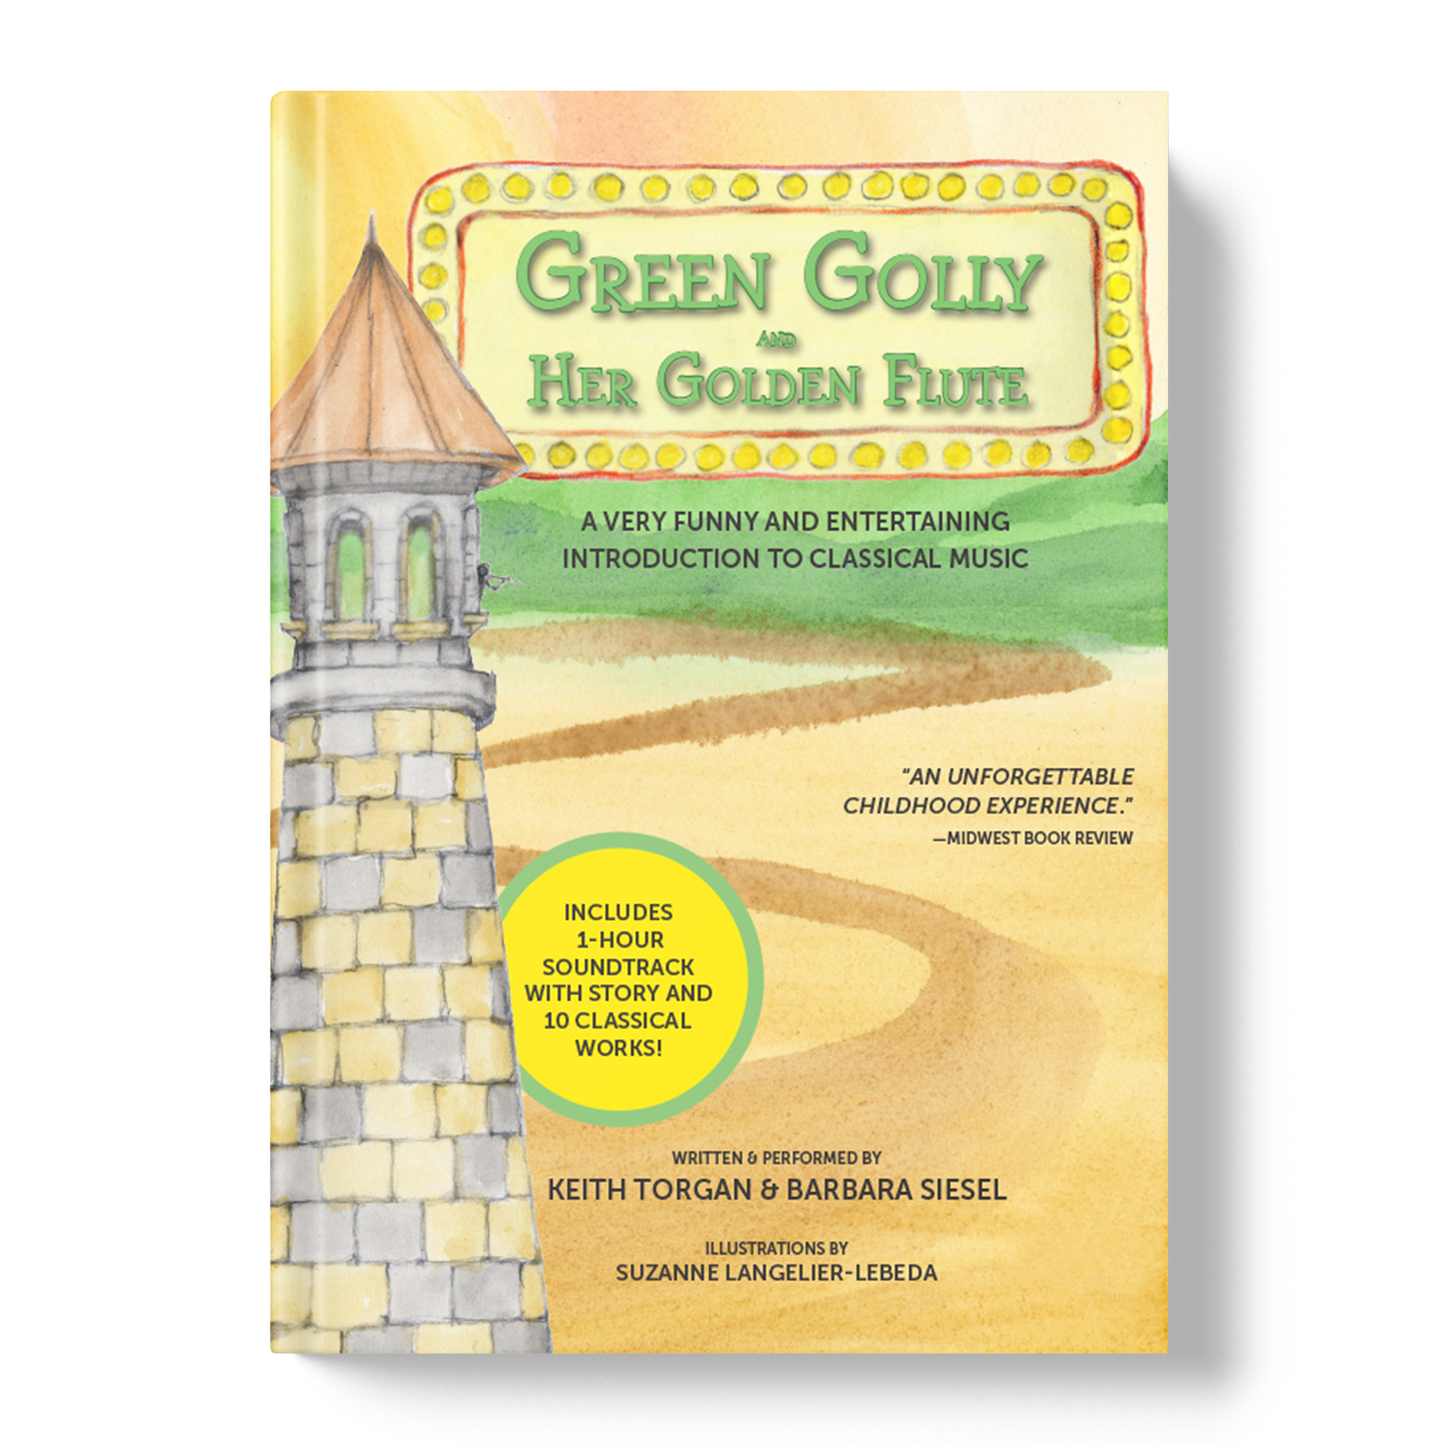 Green Golly & her Golden Flute (book & CD)